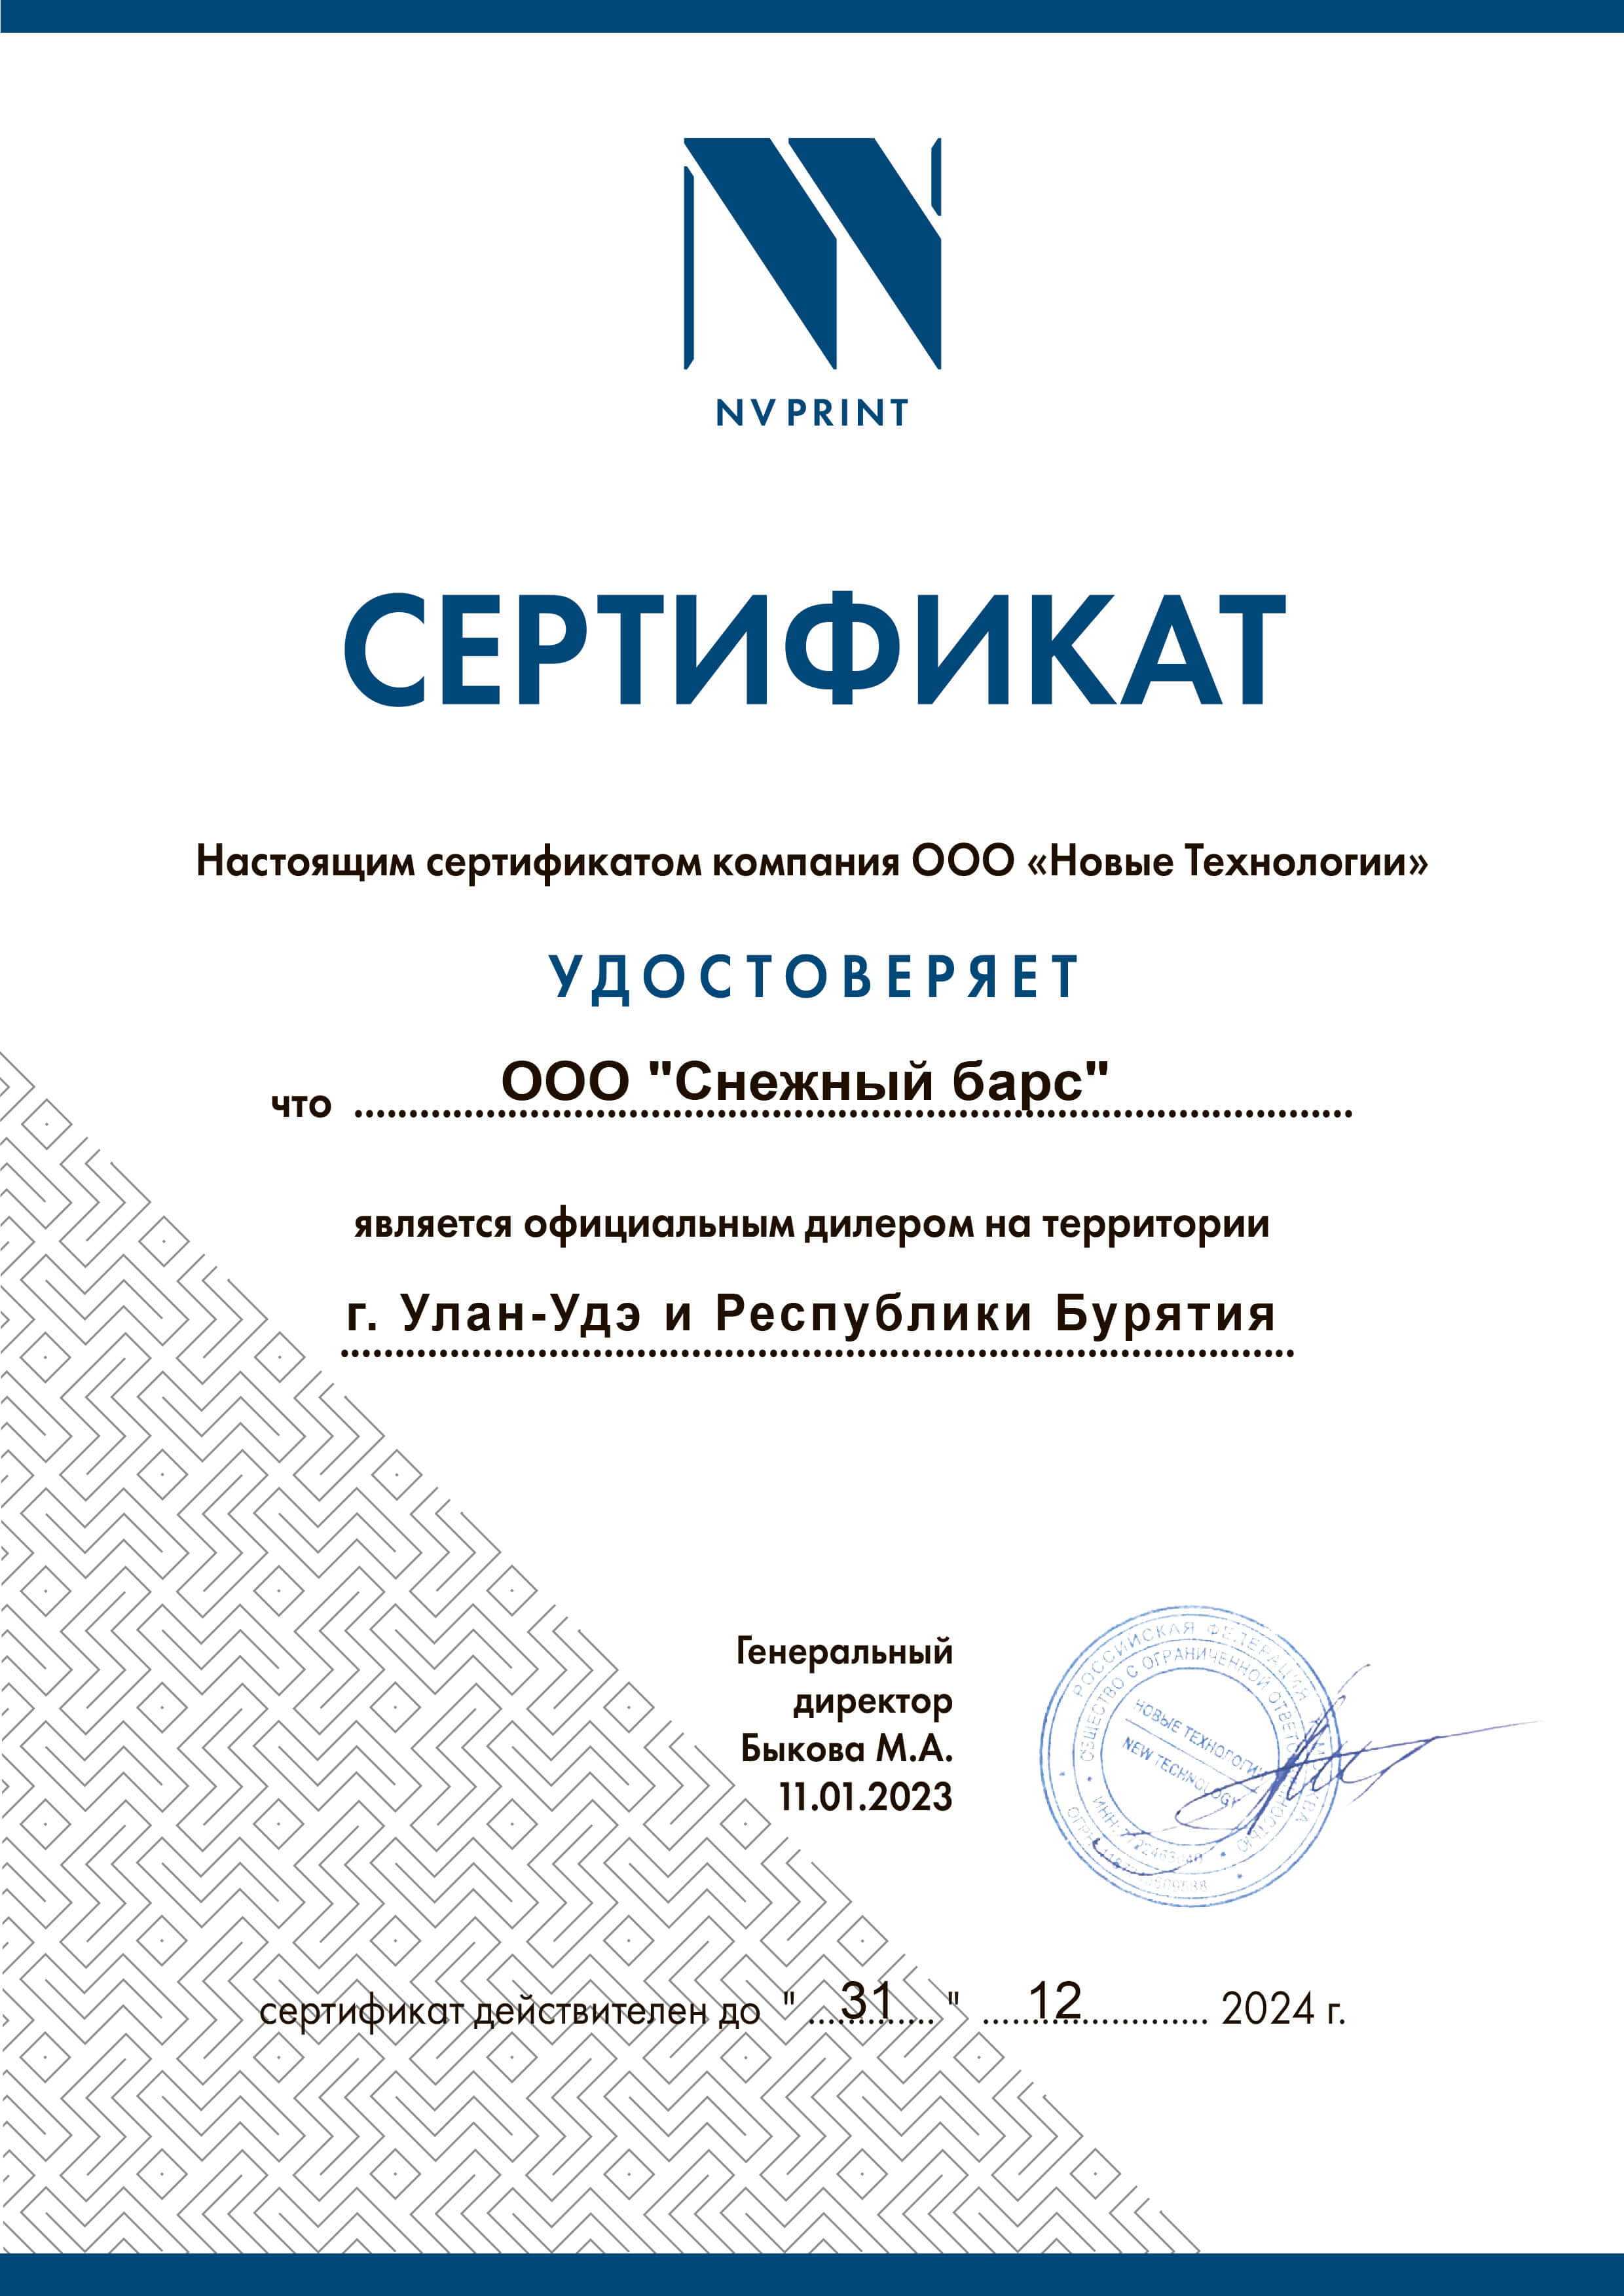 Сертификат официального дилера NVPrint